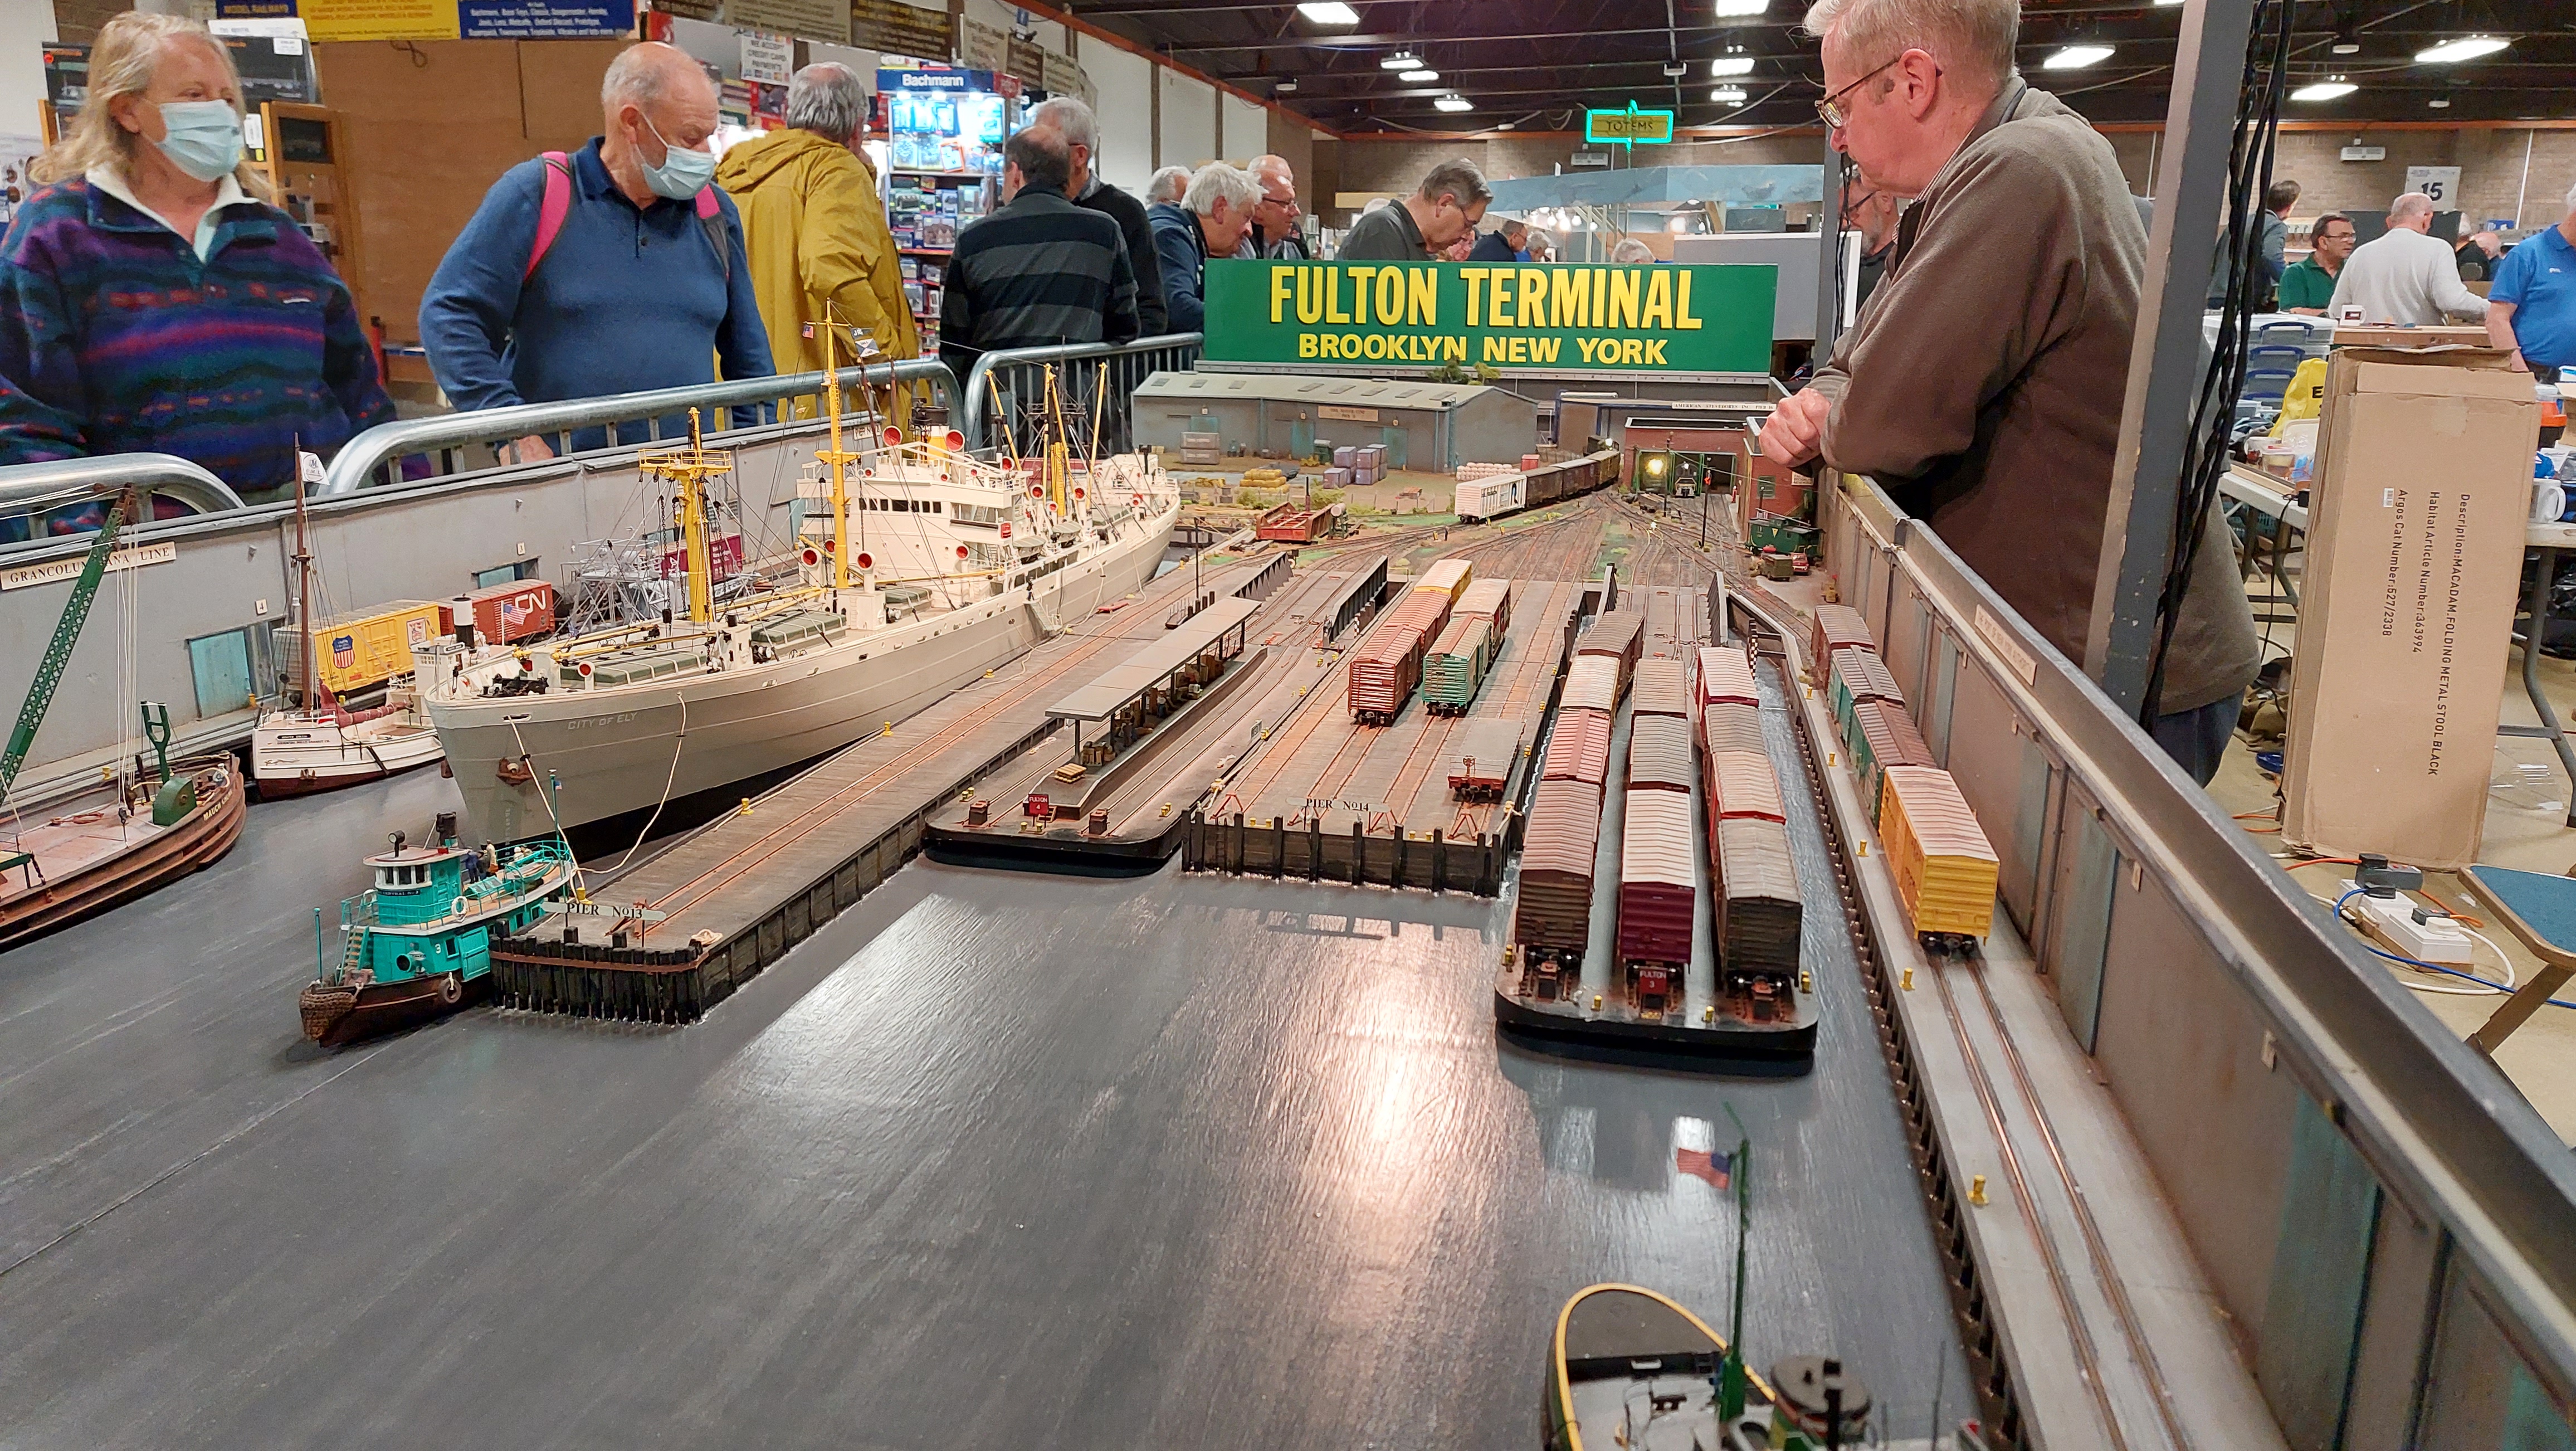 Fulton Terminal